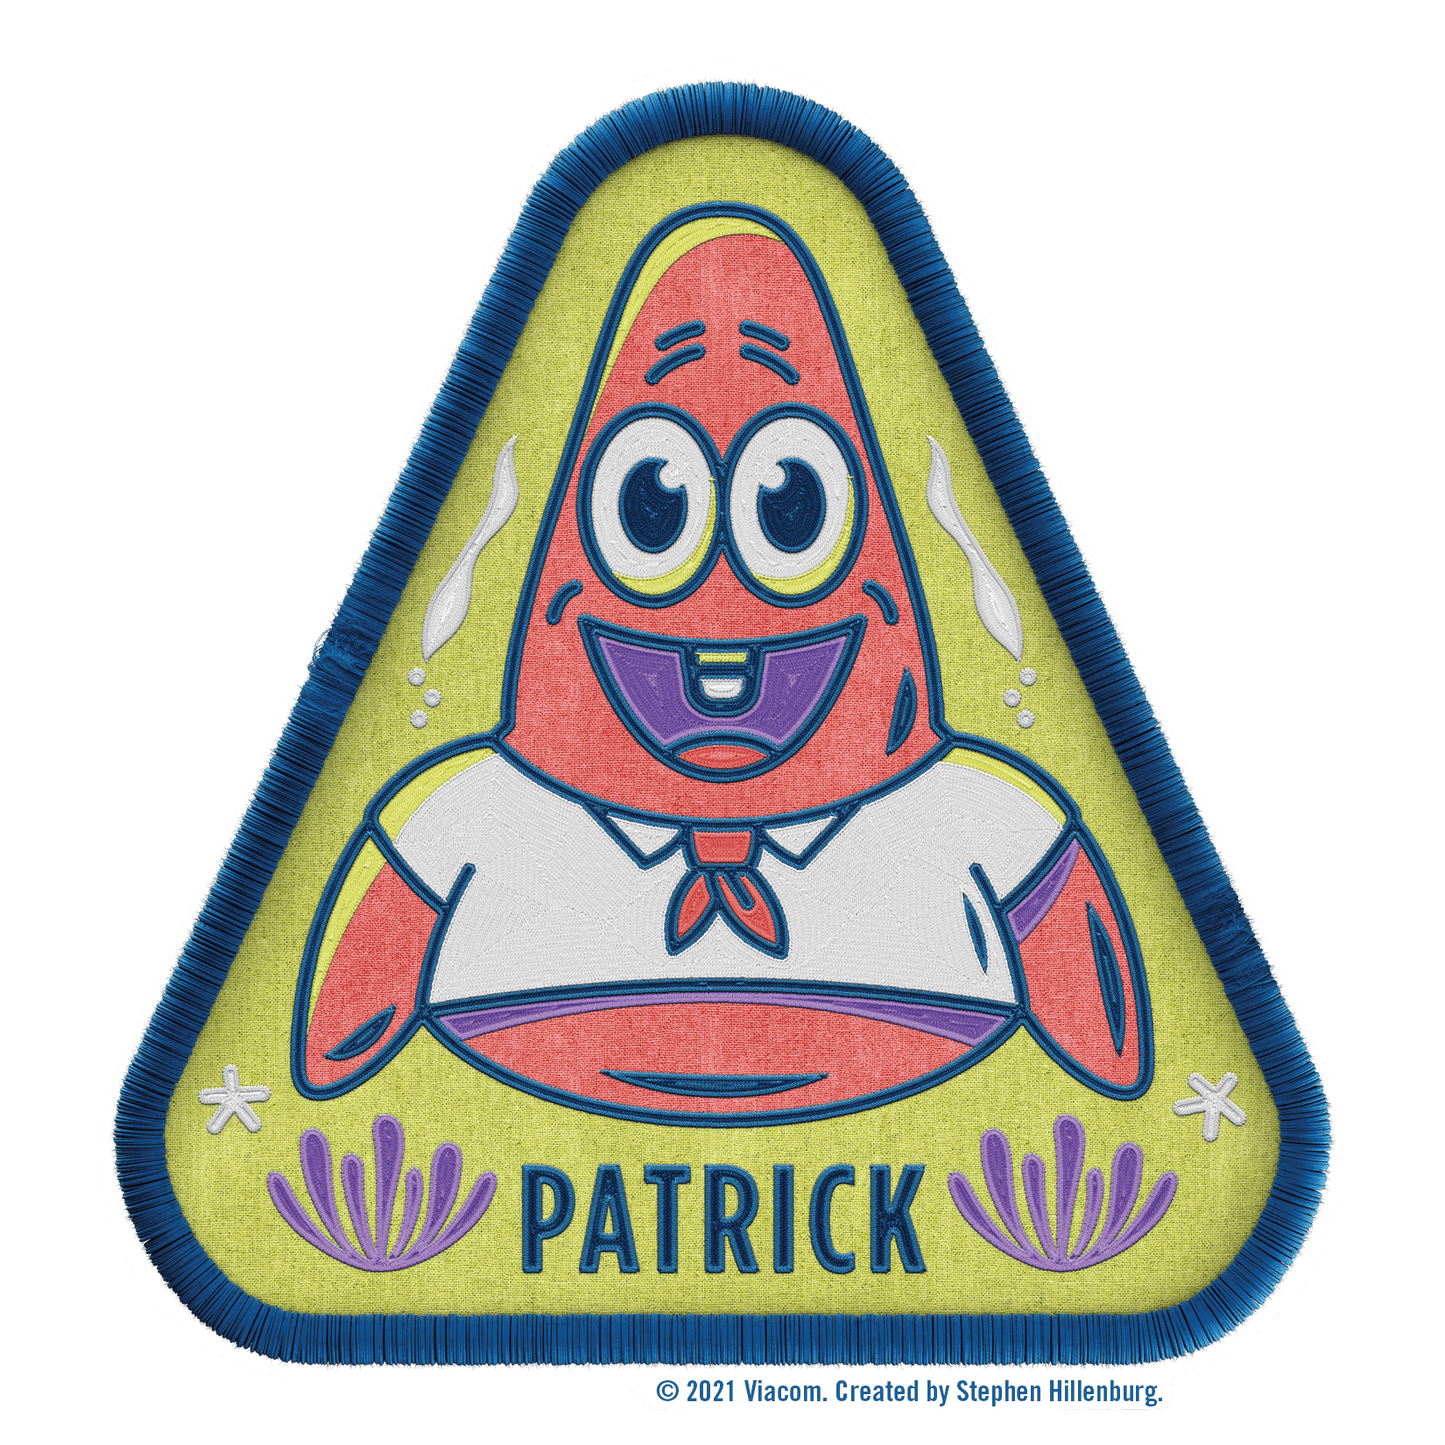 SpongeBob SquarePants Kamp Koral Character Badge Stickers Pack of 3 - Paramount Shop